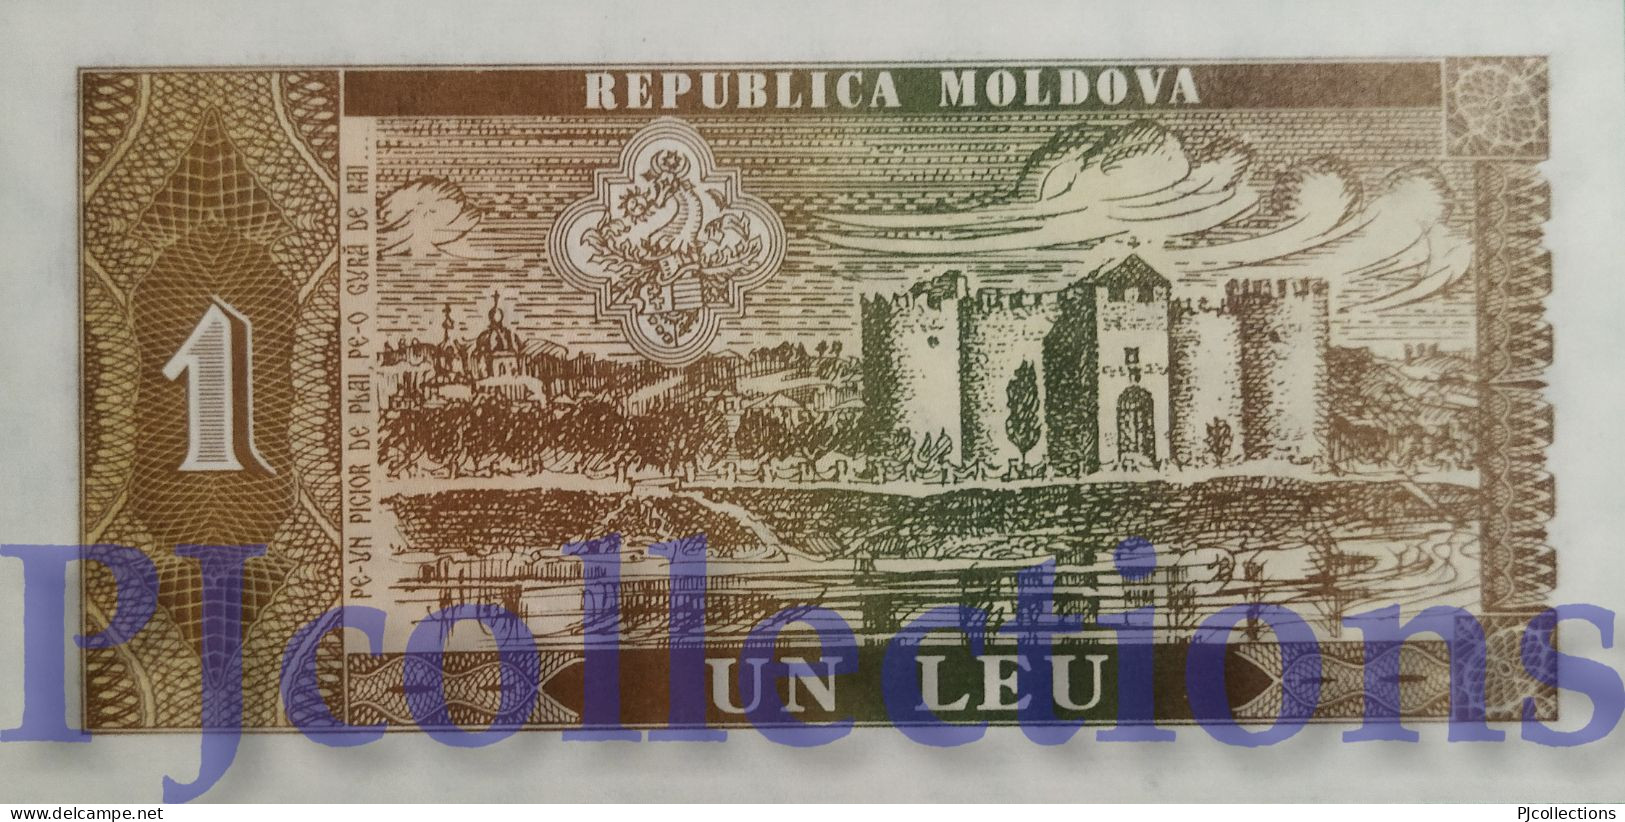 MOLDOVA 1 LEU 1992 PICK 5 UNC - Moldova